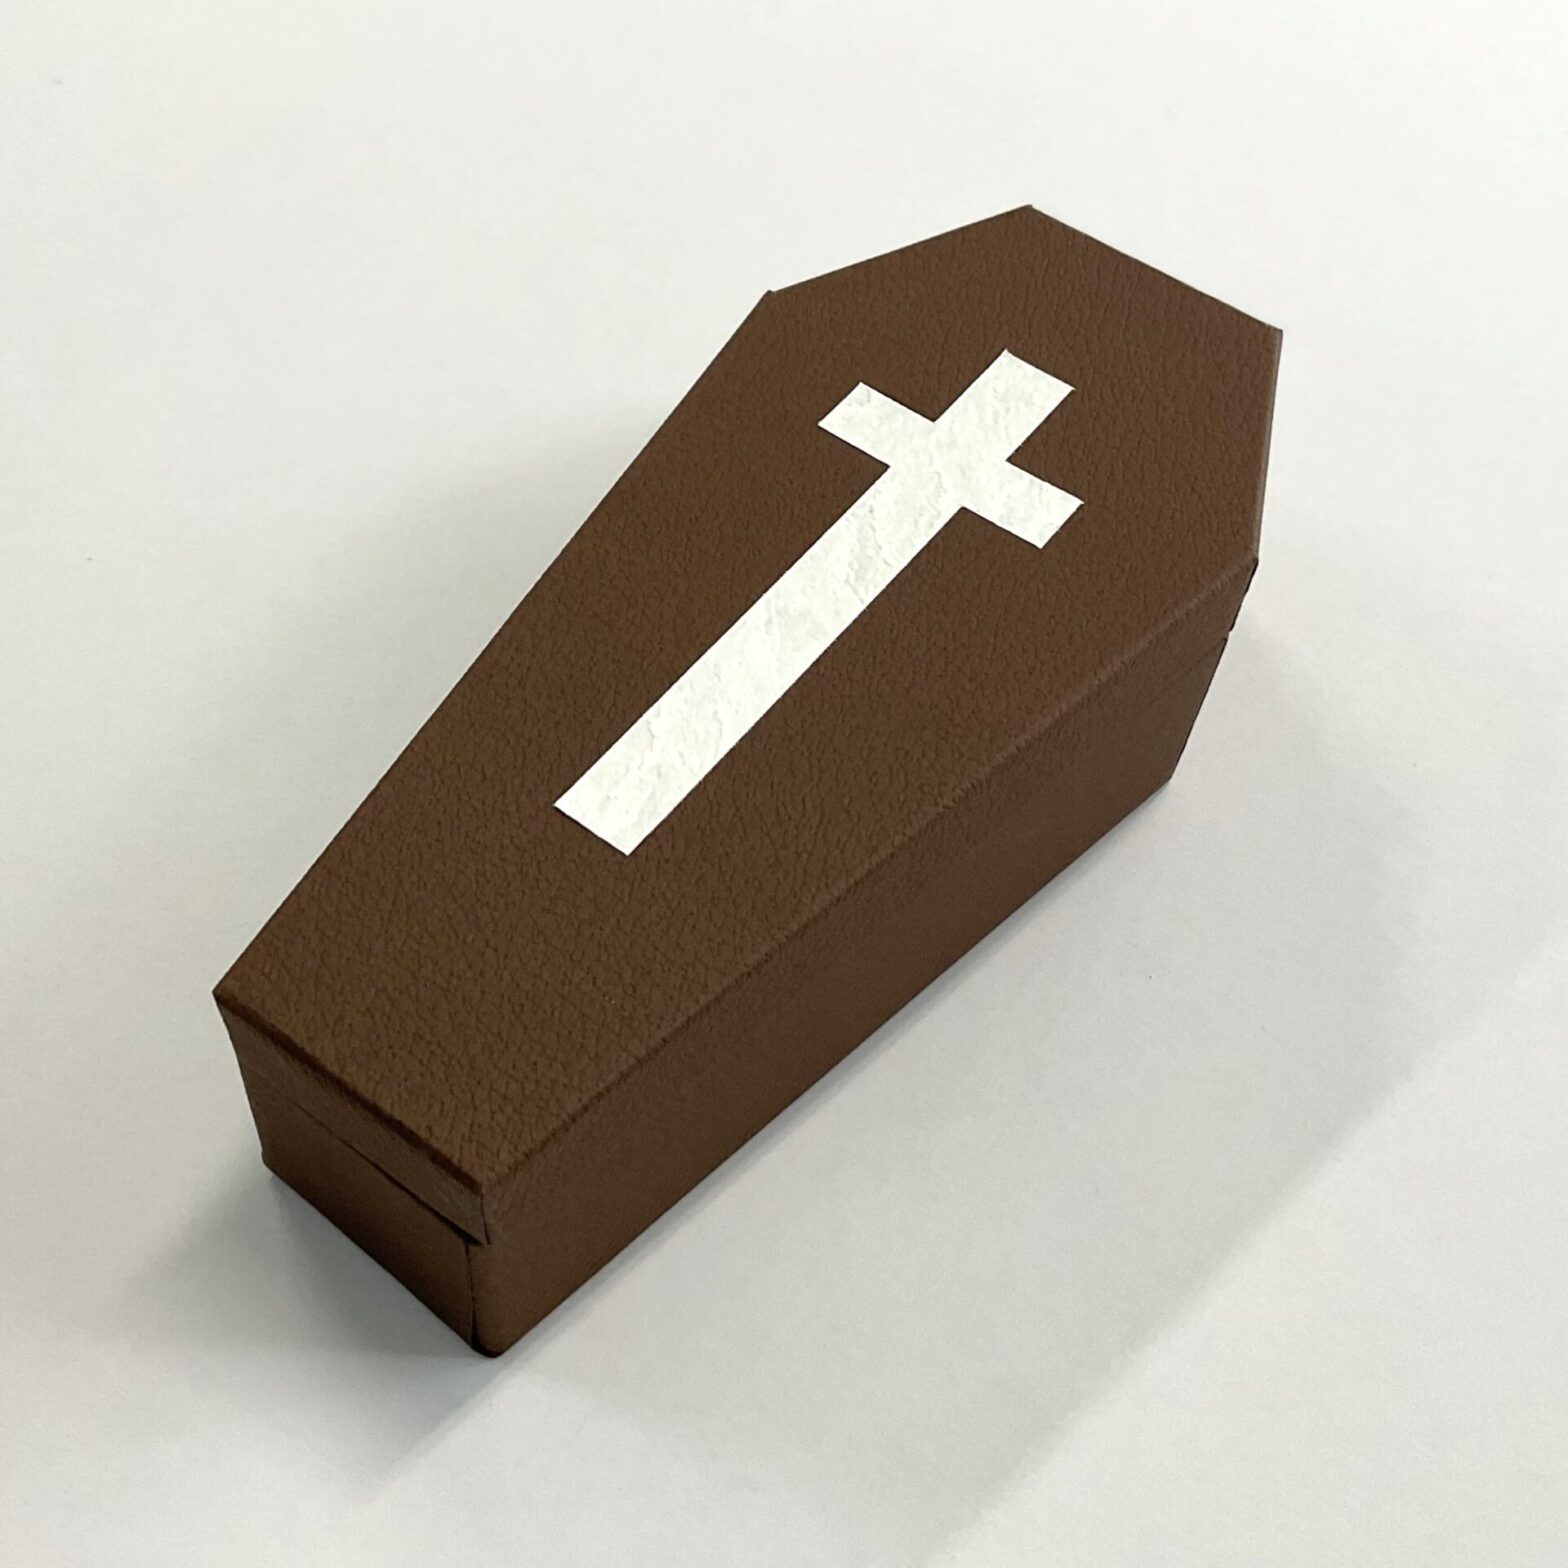 ギフトボックスとして使えるハロウィンにぴったりな棺桶の形の貼り箱